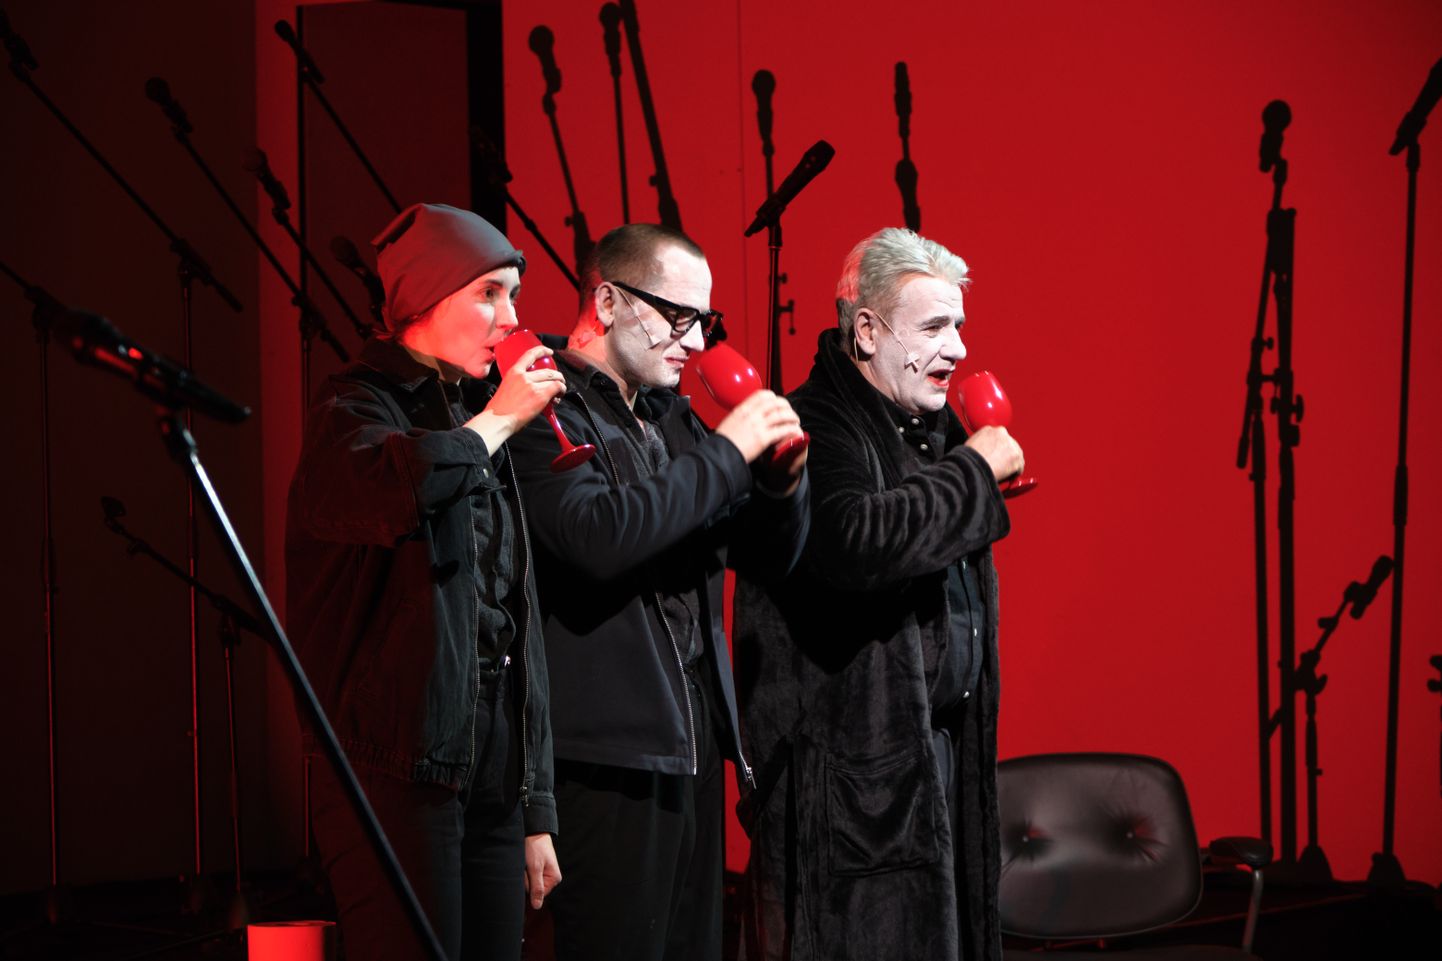 Марика Шмуксте, Эдийс Залакс и Мартиньш Вилсонс в спектакле "Последний человек" в Digital Art House